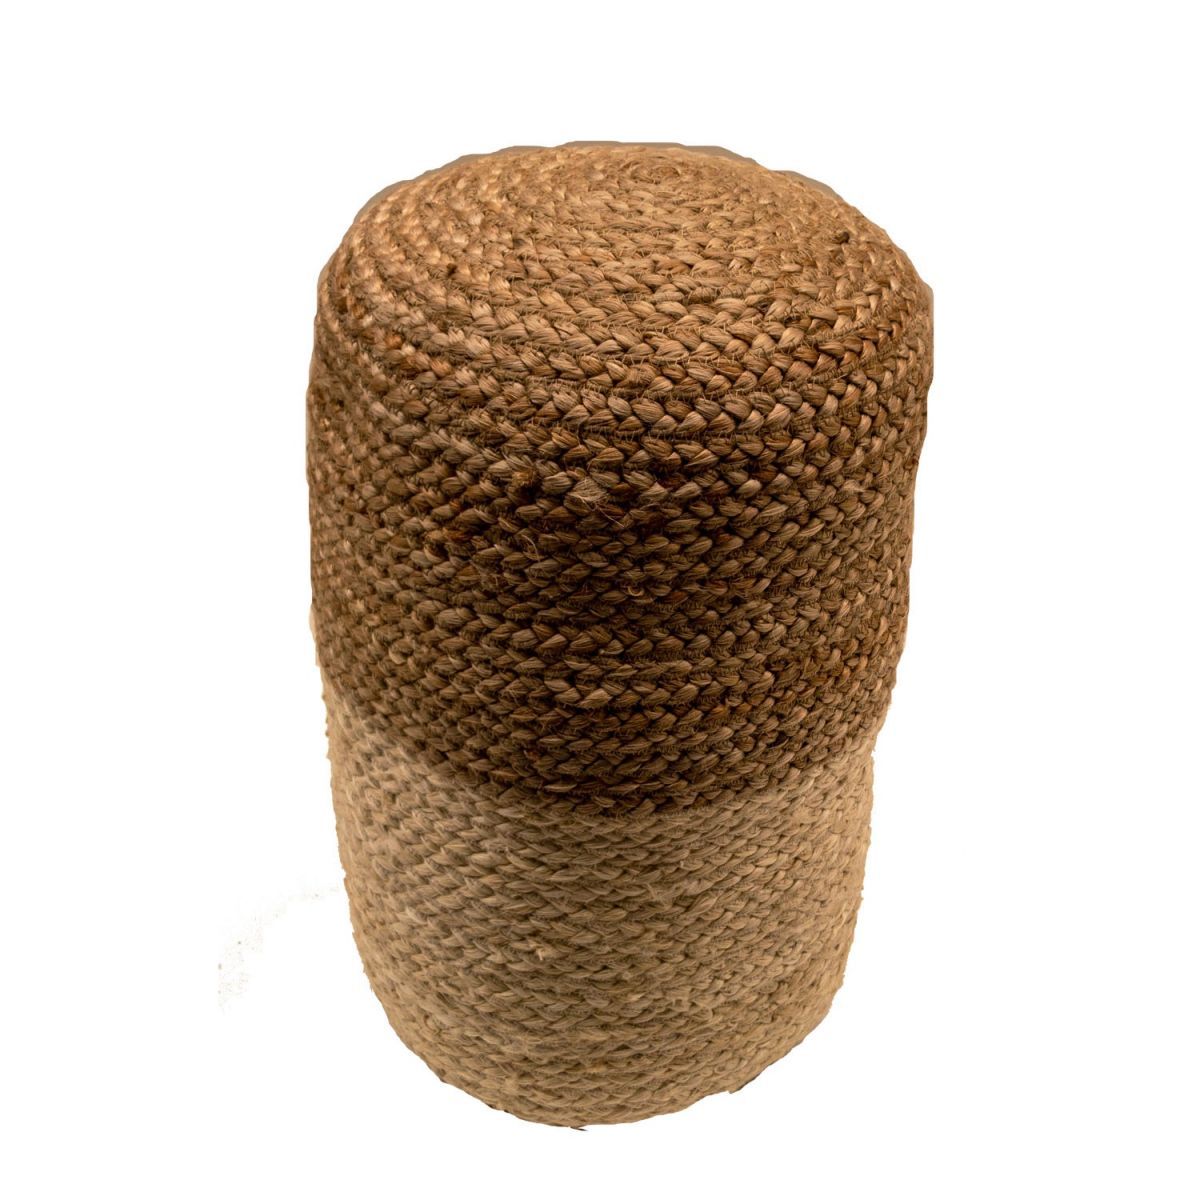 pouf hemp natural ecru round 35 hg 50cm